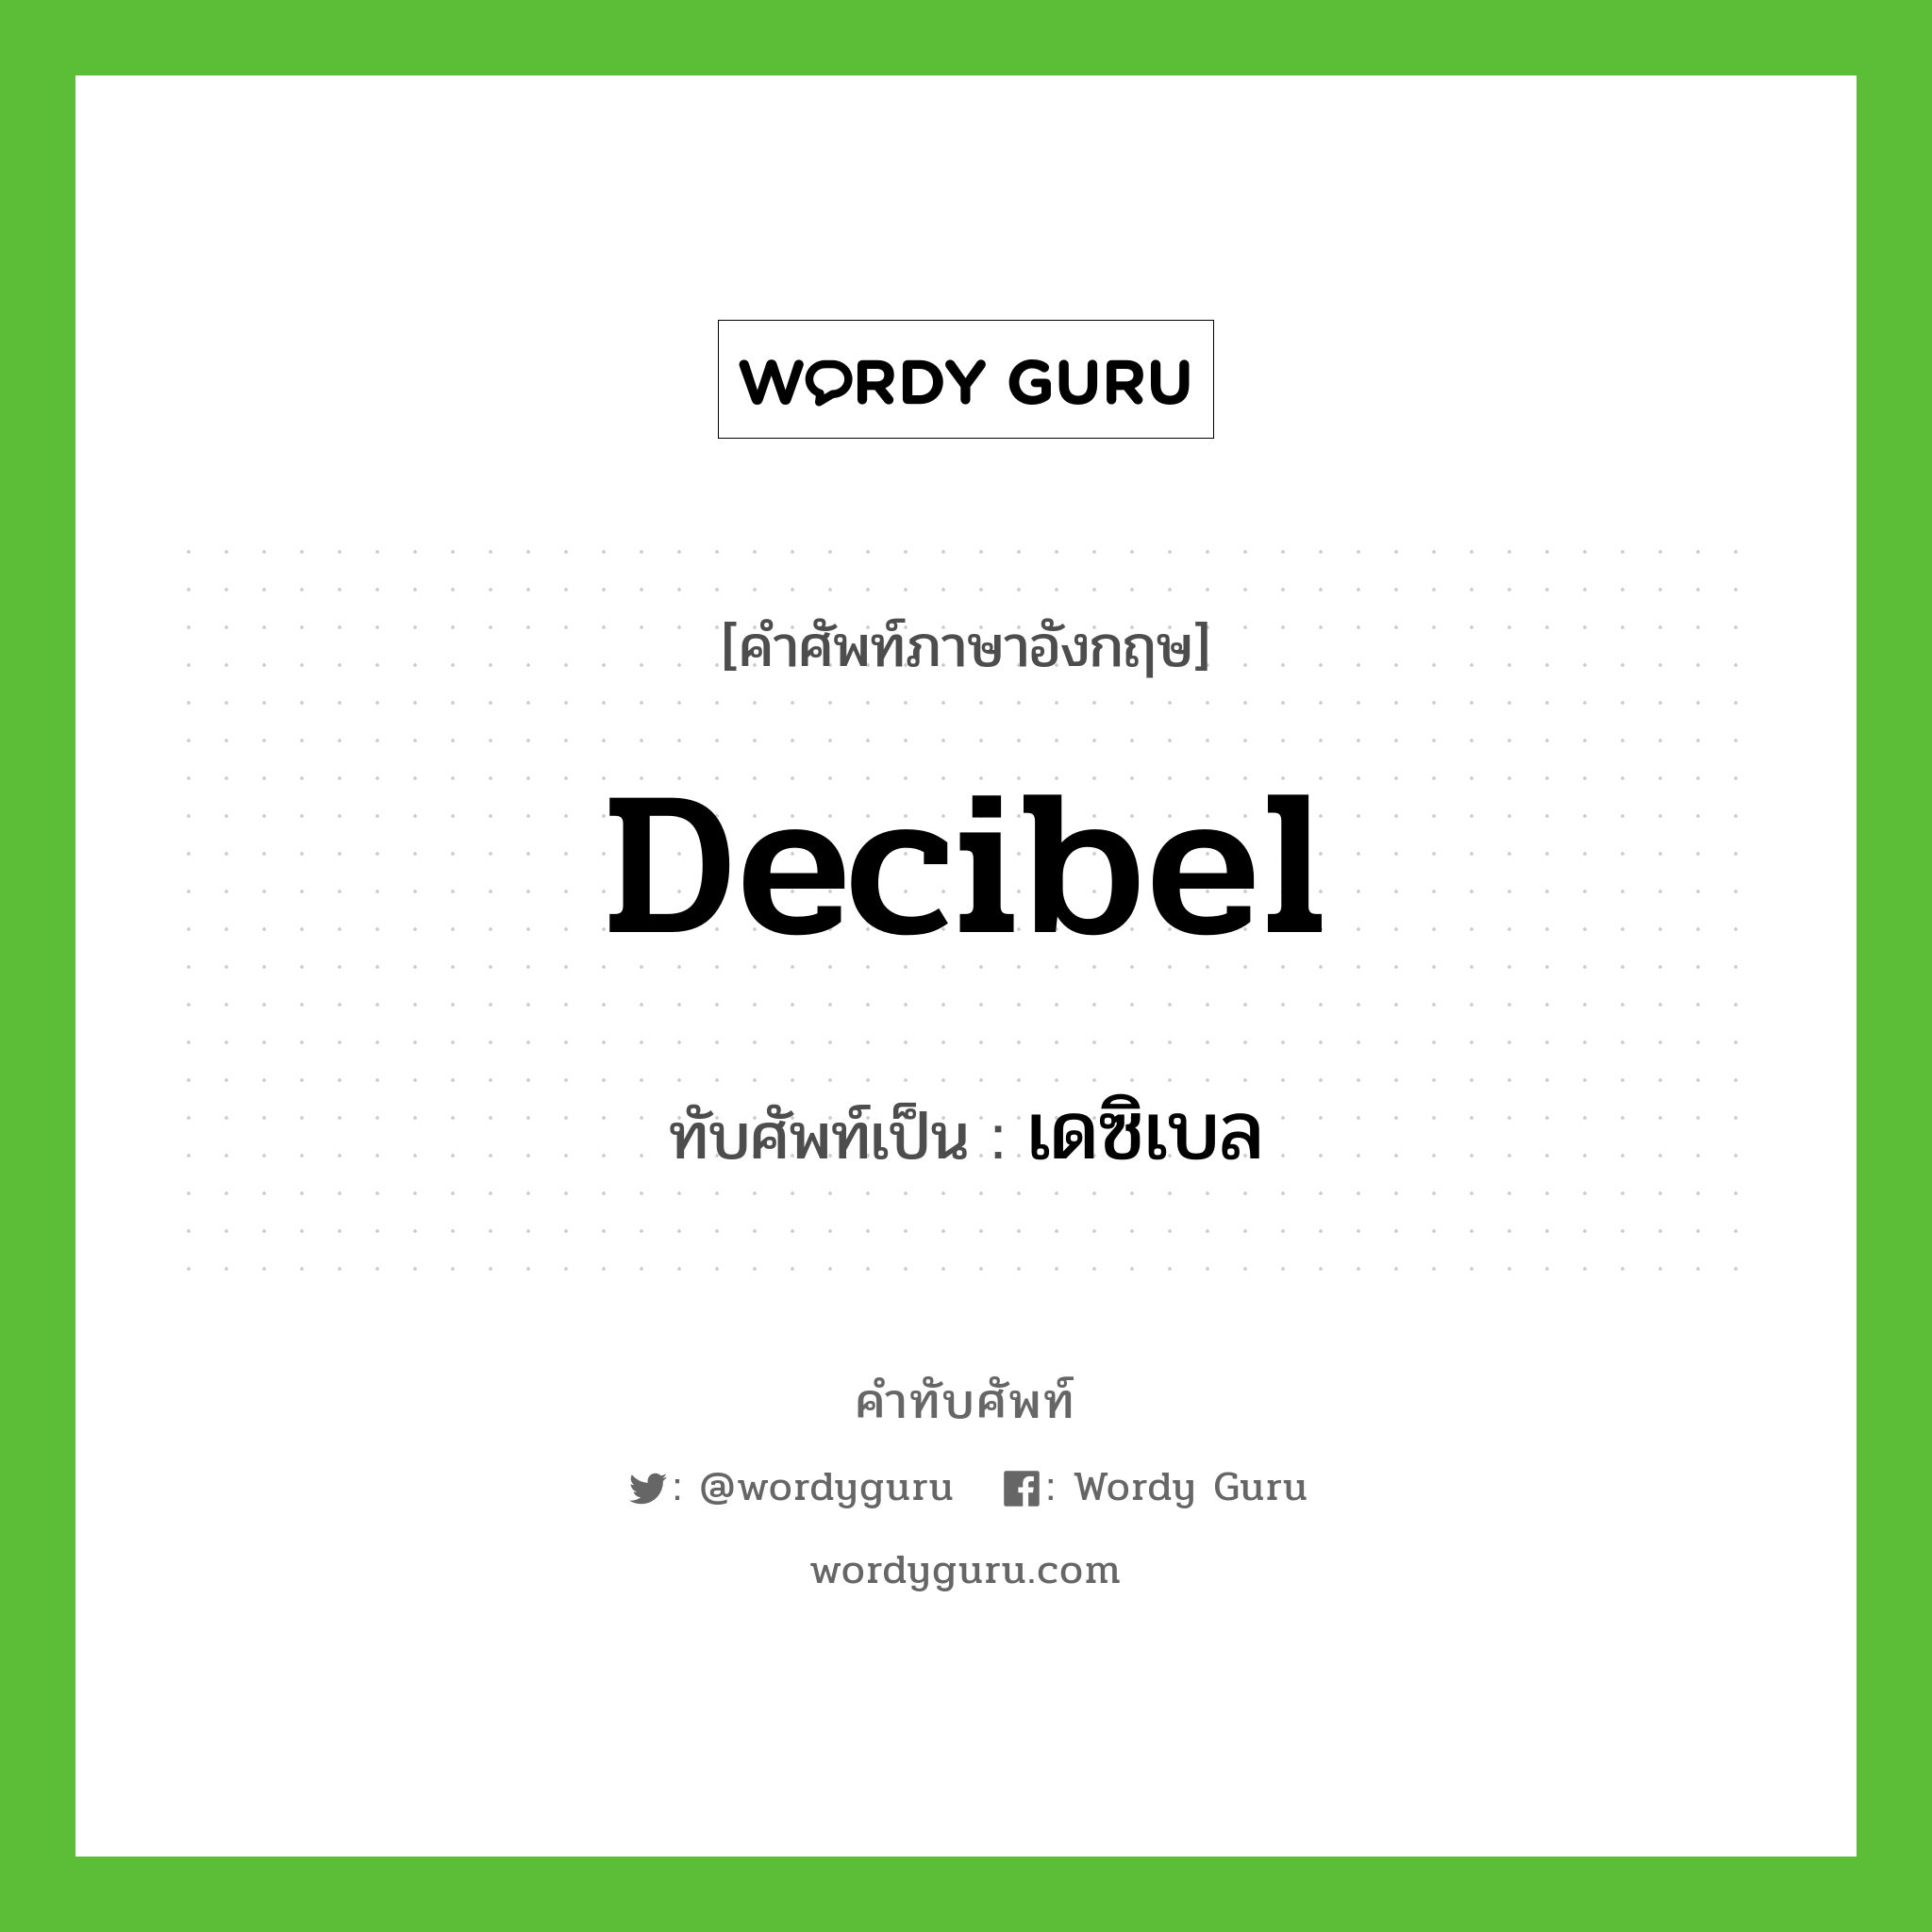 decibel เขียนเป็นคำไทยว่าอะไร?, คำศัพท์ภาษาอังกฤษ decibel ทับศัพท์เป็น เดซิเบล